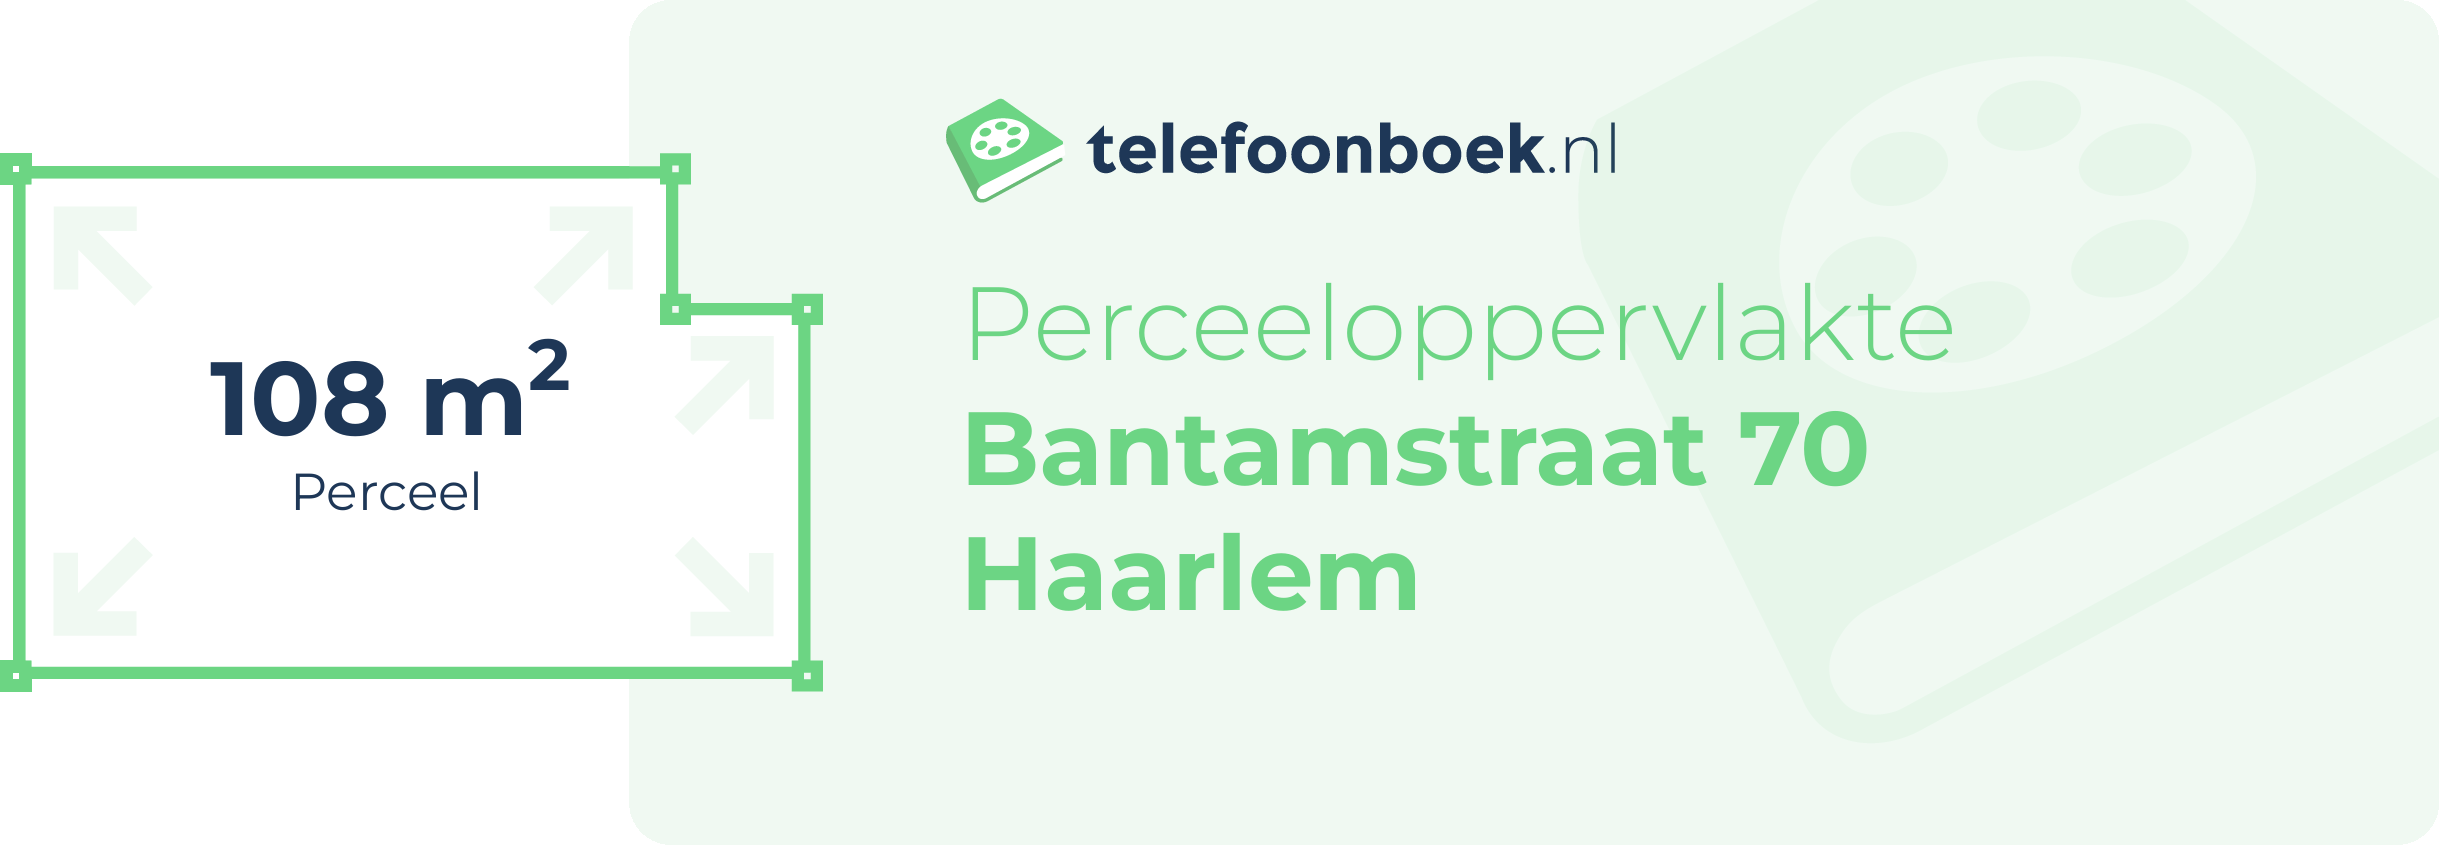 Perceeloppervlakte Bantamstraat 70 Haarlem